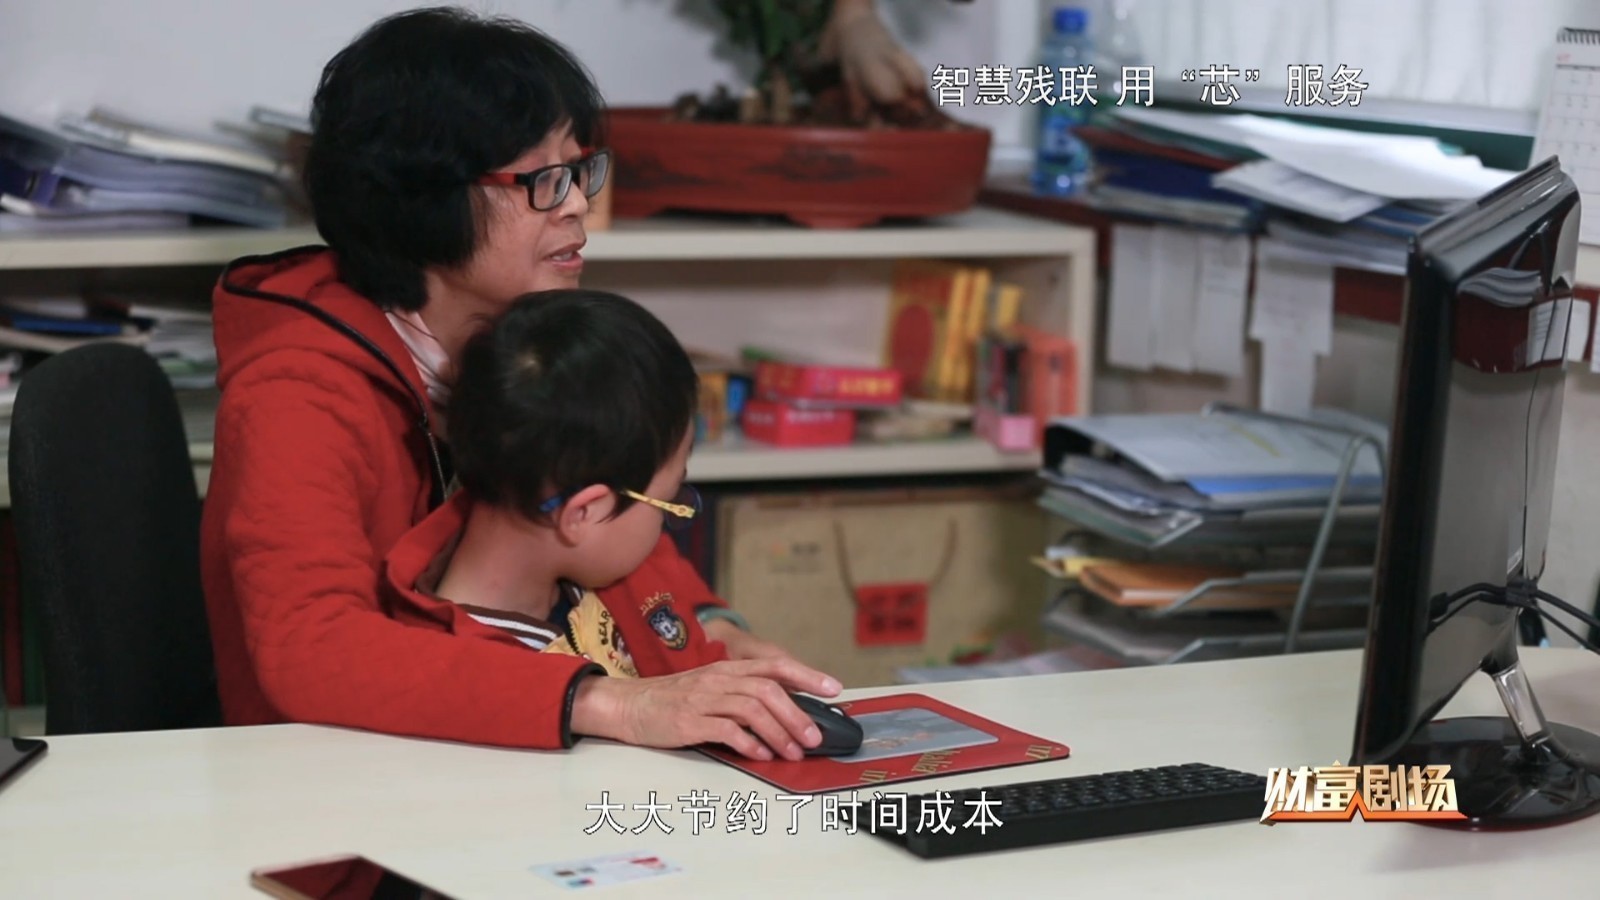 北京市残疾人康复管理系统，残疾人可以通过它进行网上定制康复课程